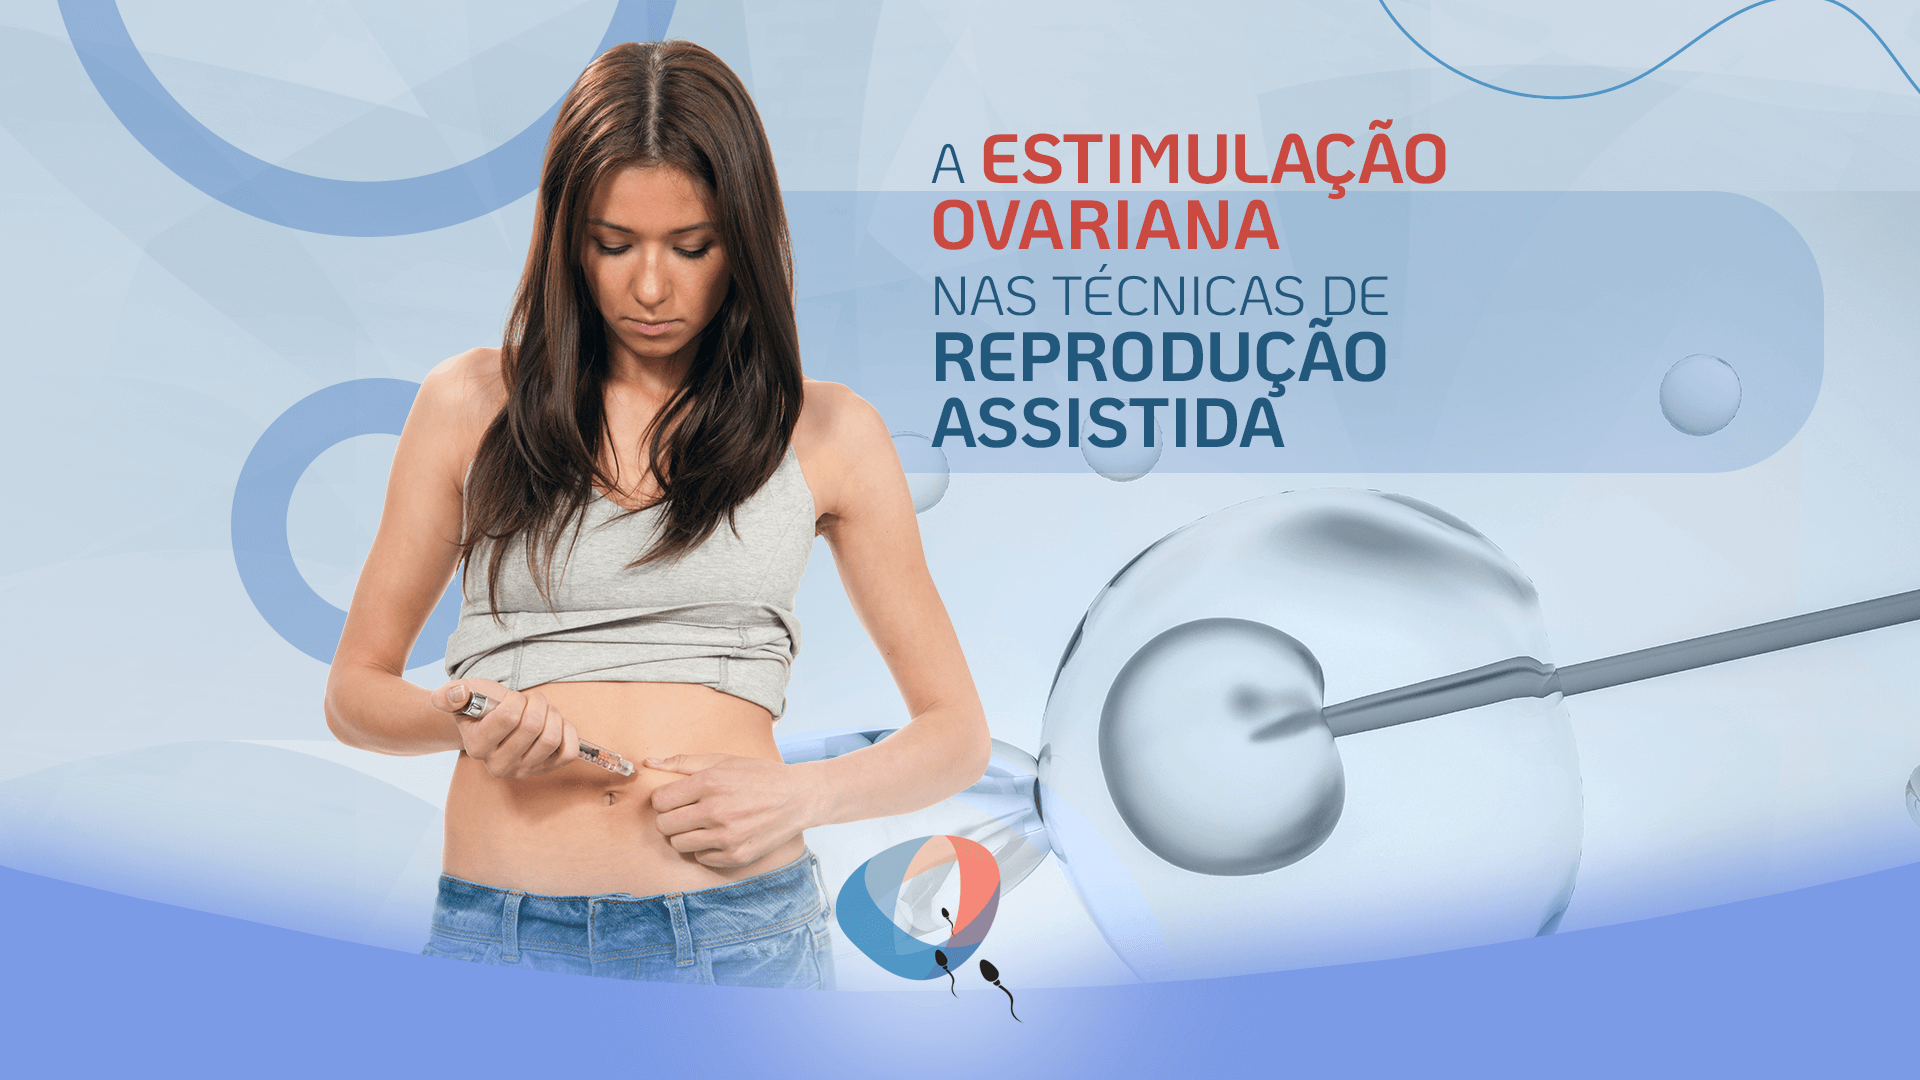 A estimulação ovariana nas técnicas de reprodução assistida